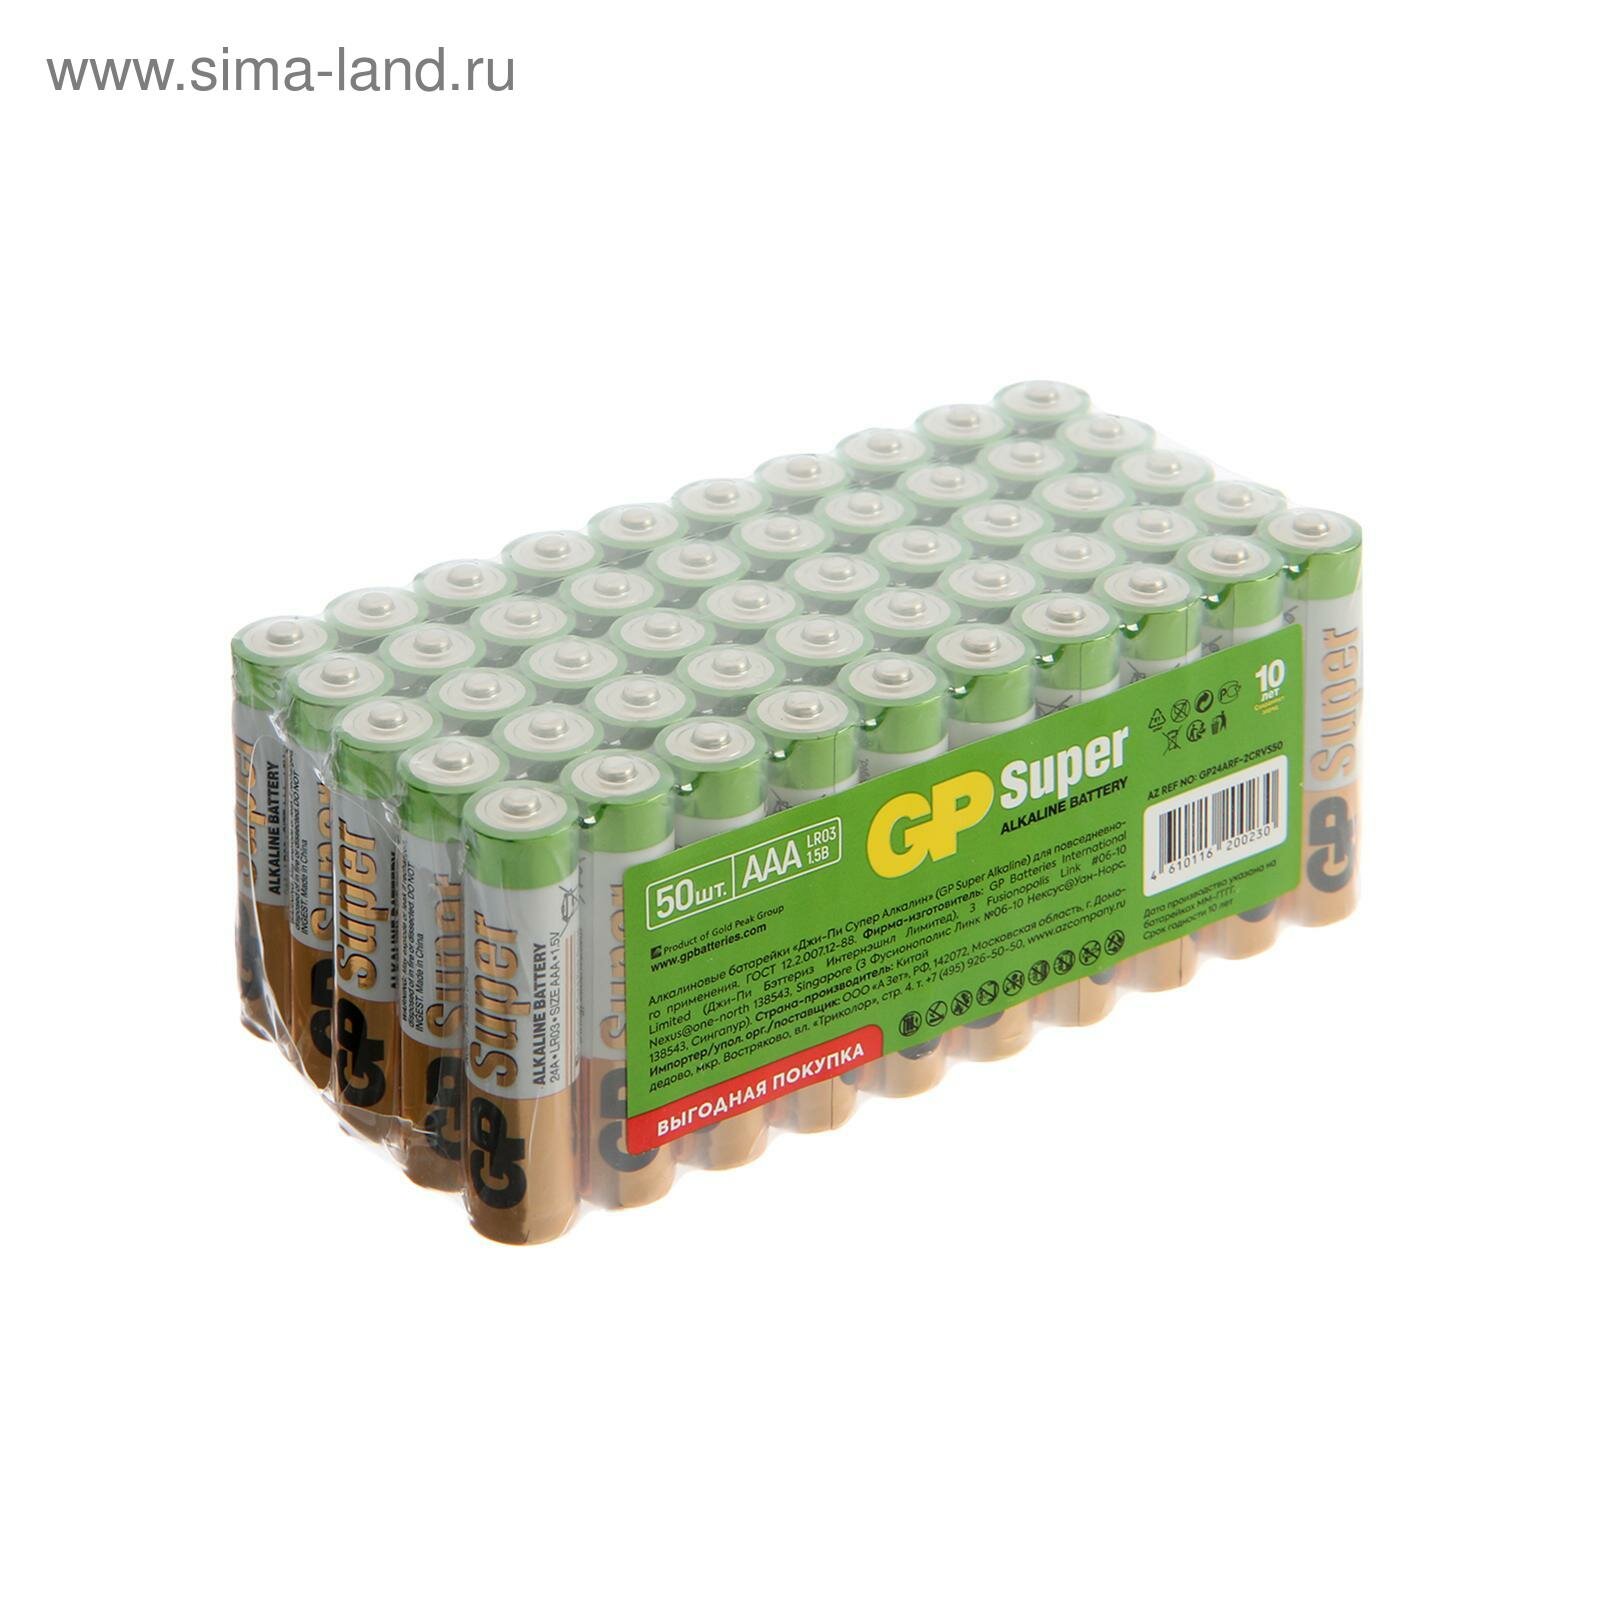 Батарейка алкалиновая Super, AAA, LR03-50BOX, 1.5В, набор 50 шт